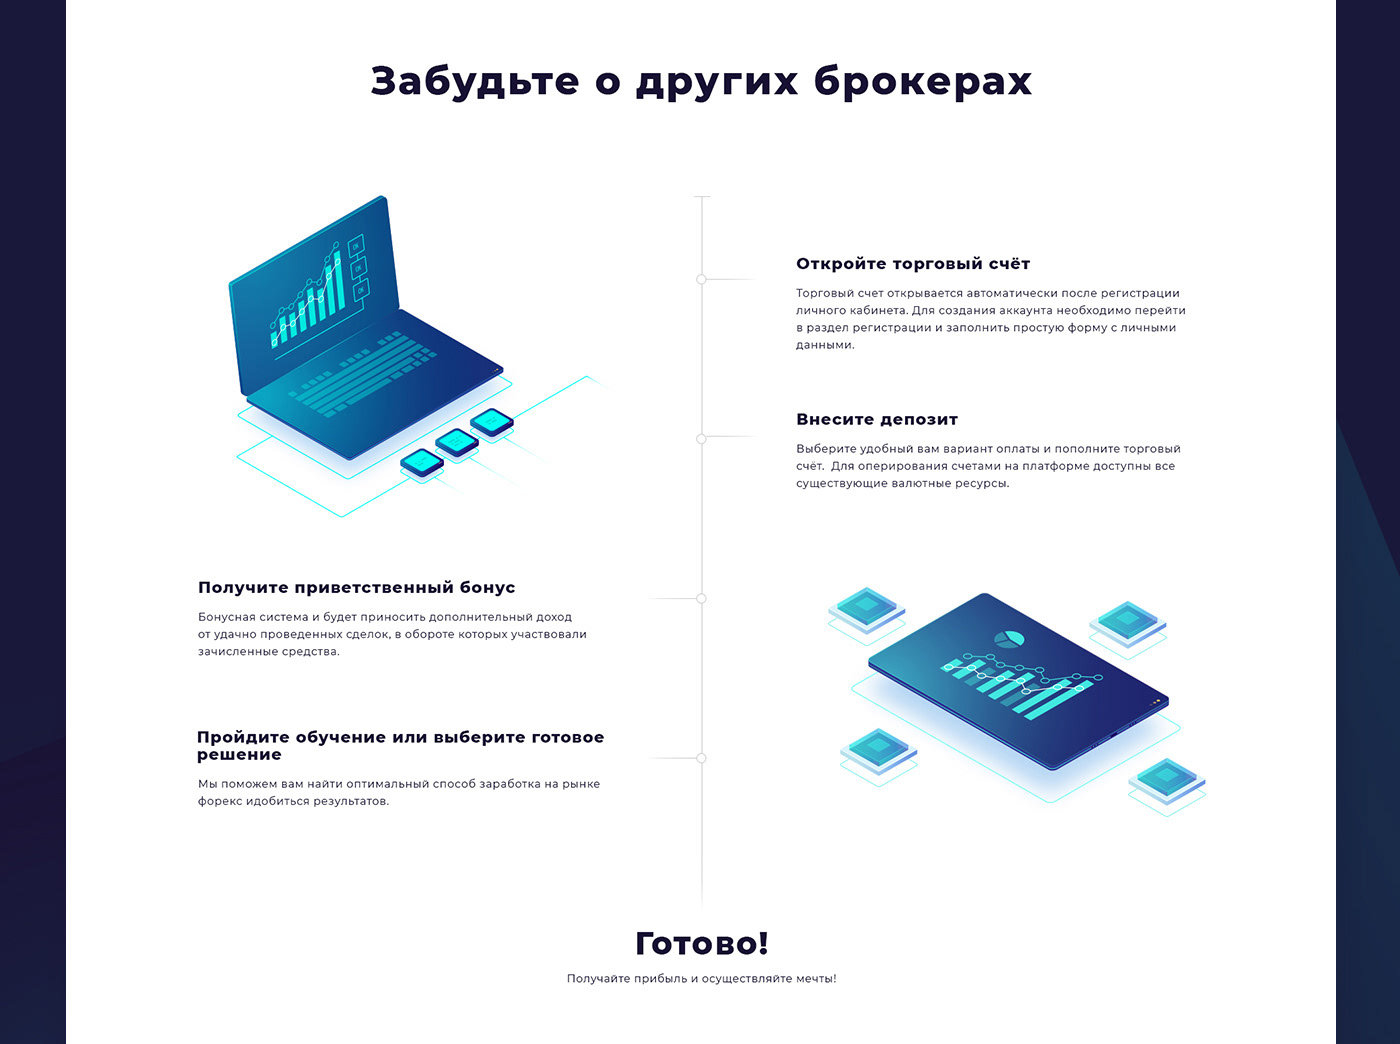 Forex broker finance business web-design e-comerce